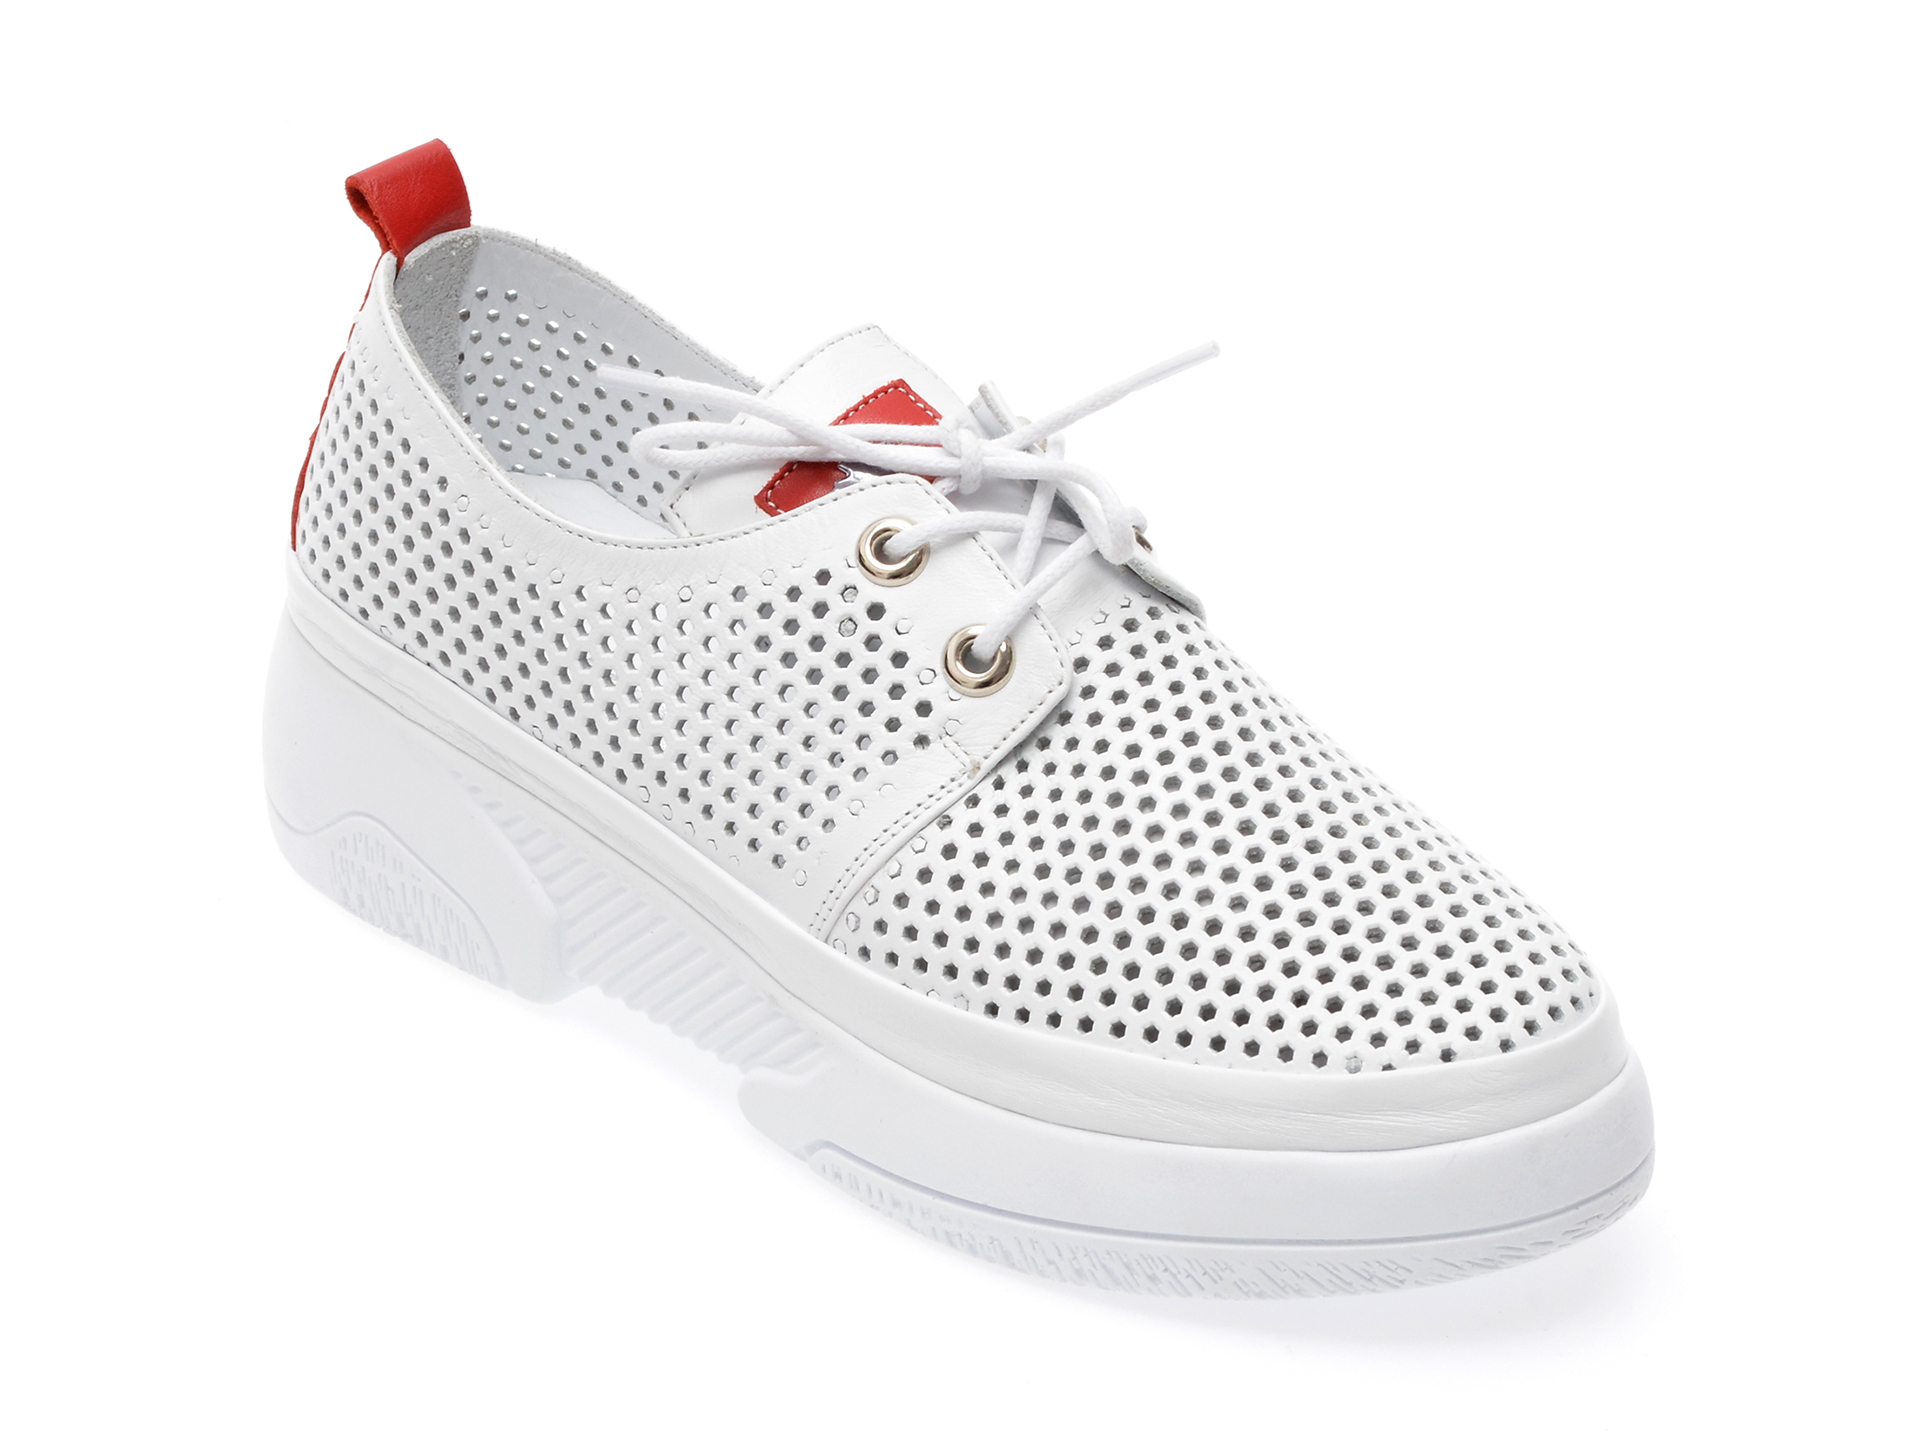 Pantofi EVROMODA albi, 20279, din piele naturala EVROMODA EVROMODA